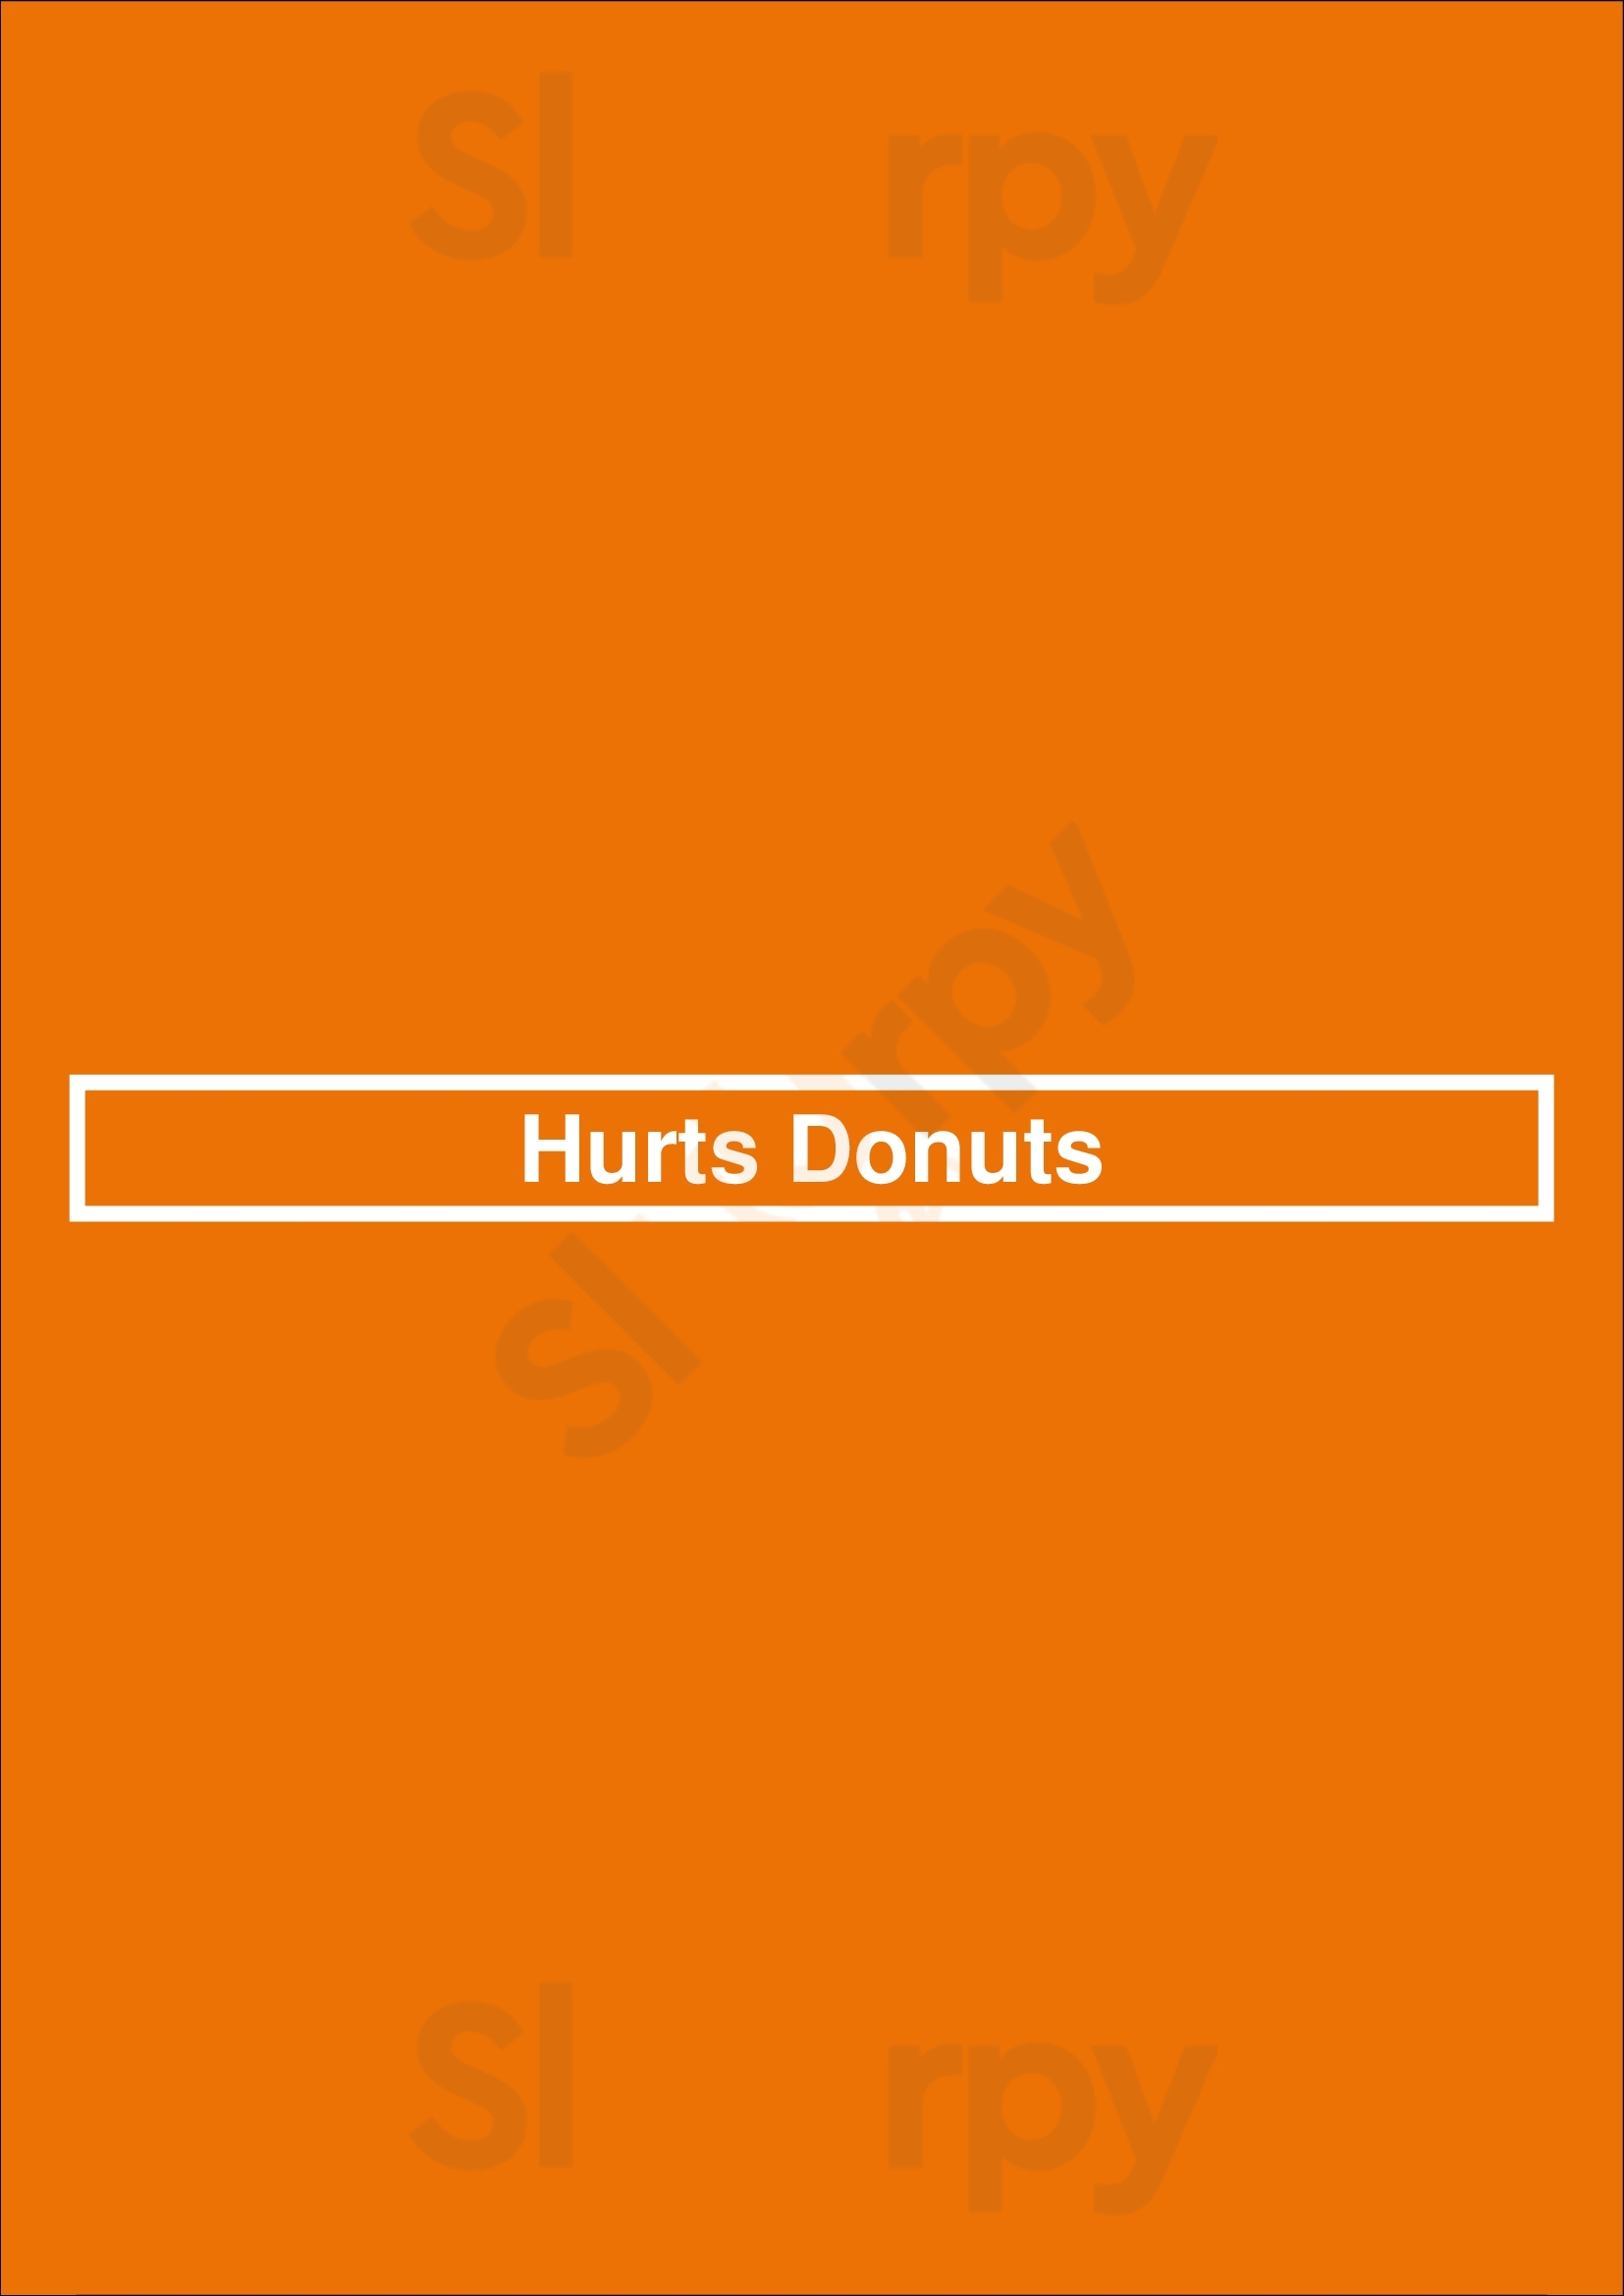 Hurts Donuts Lincoln Menu - 1